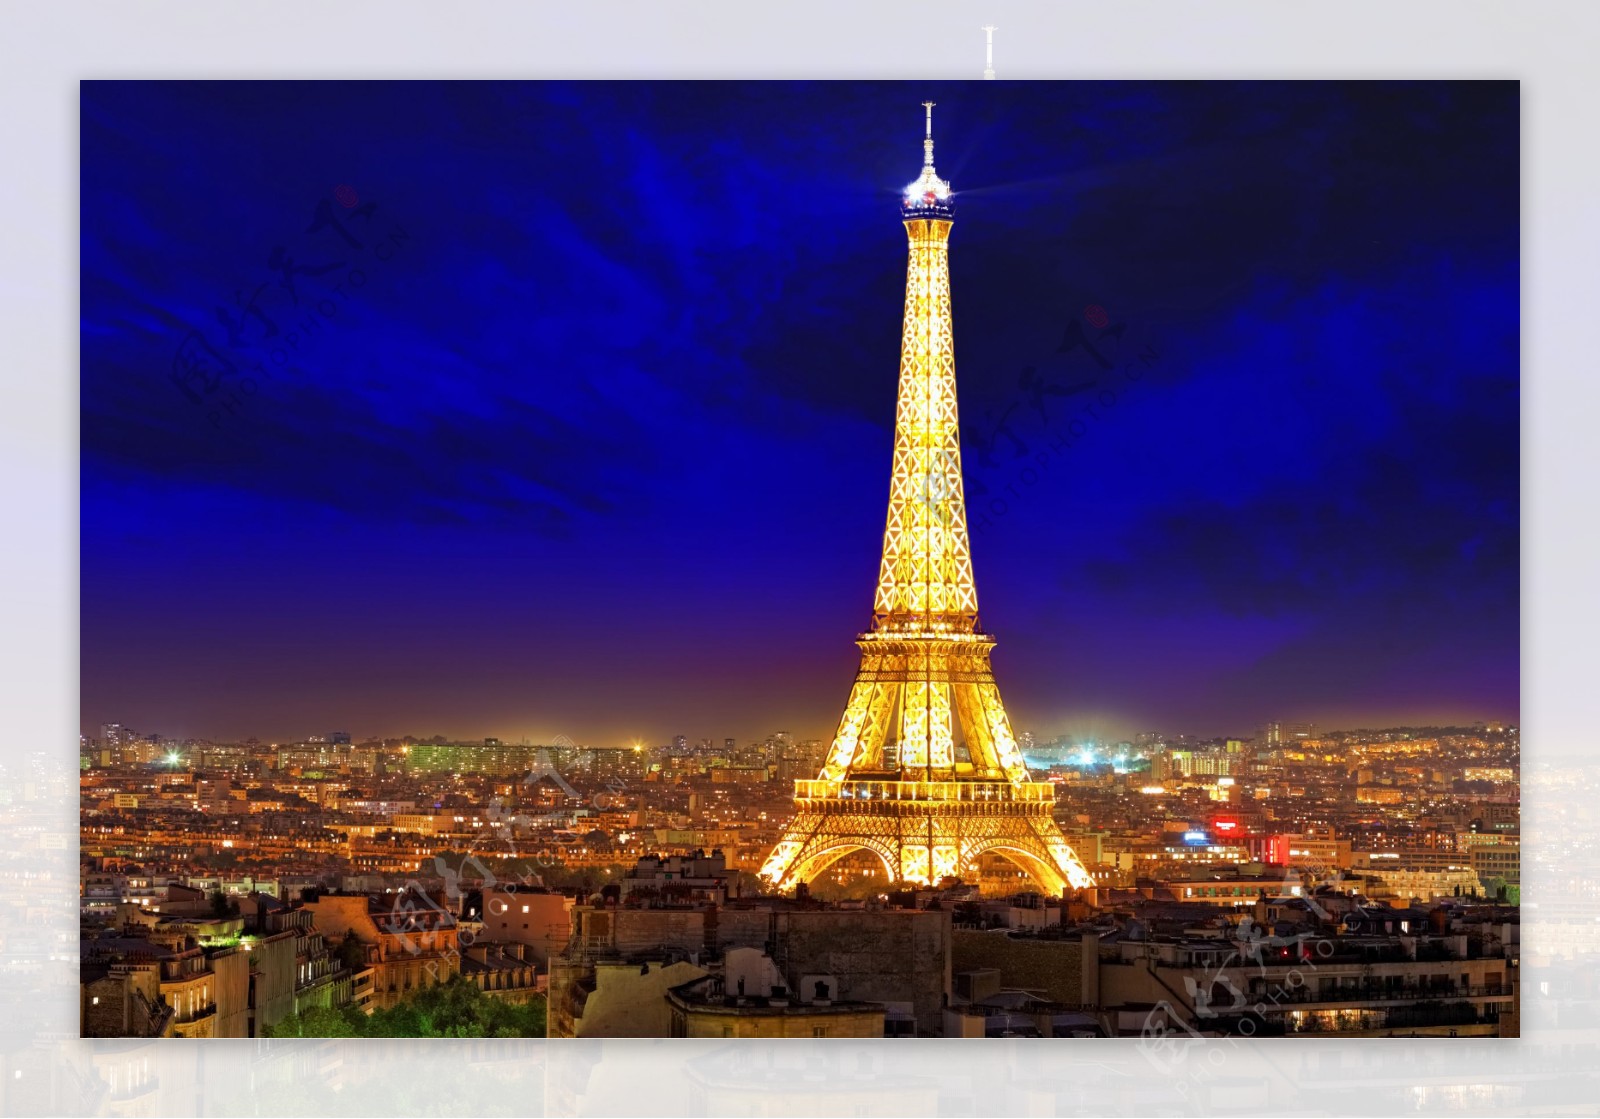 夜晚的巴黎埃菲尔铁塔,巴黎旅游攻略 - 马蜂窝